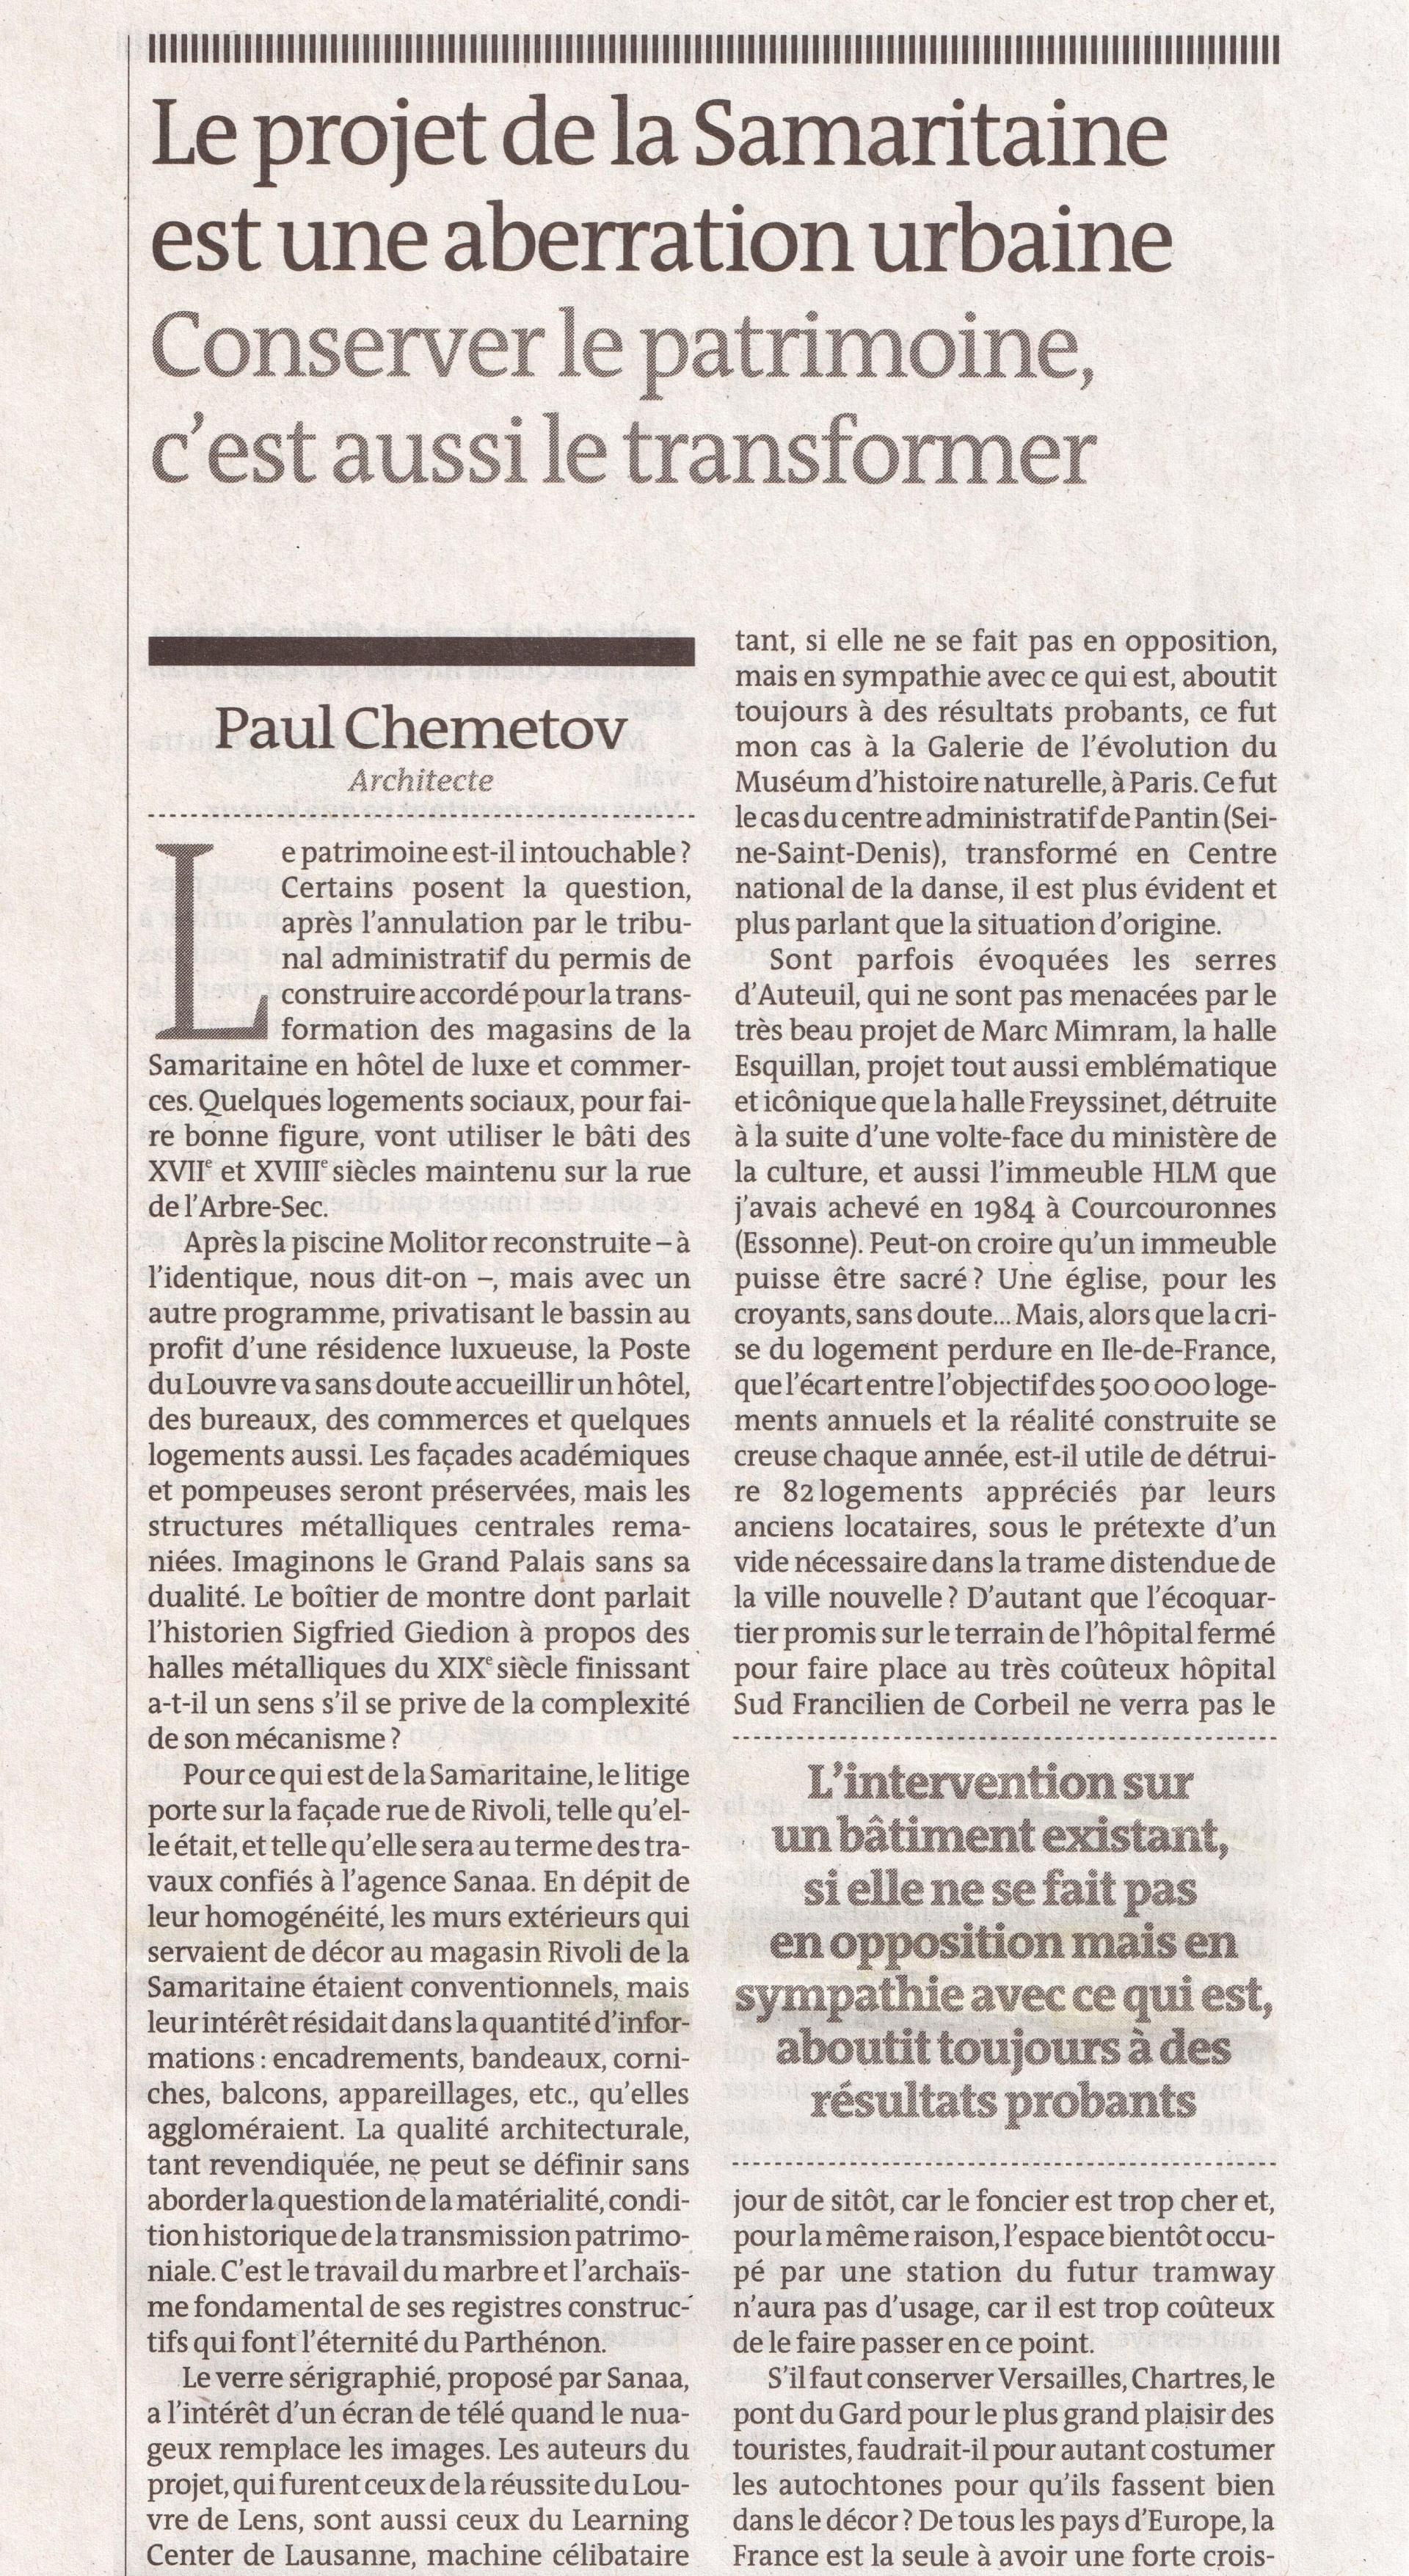 Le Monde du 12 juin 2014, p. 20, Chemetov 1